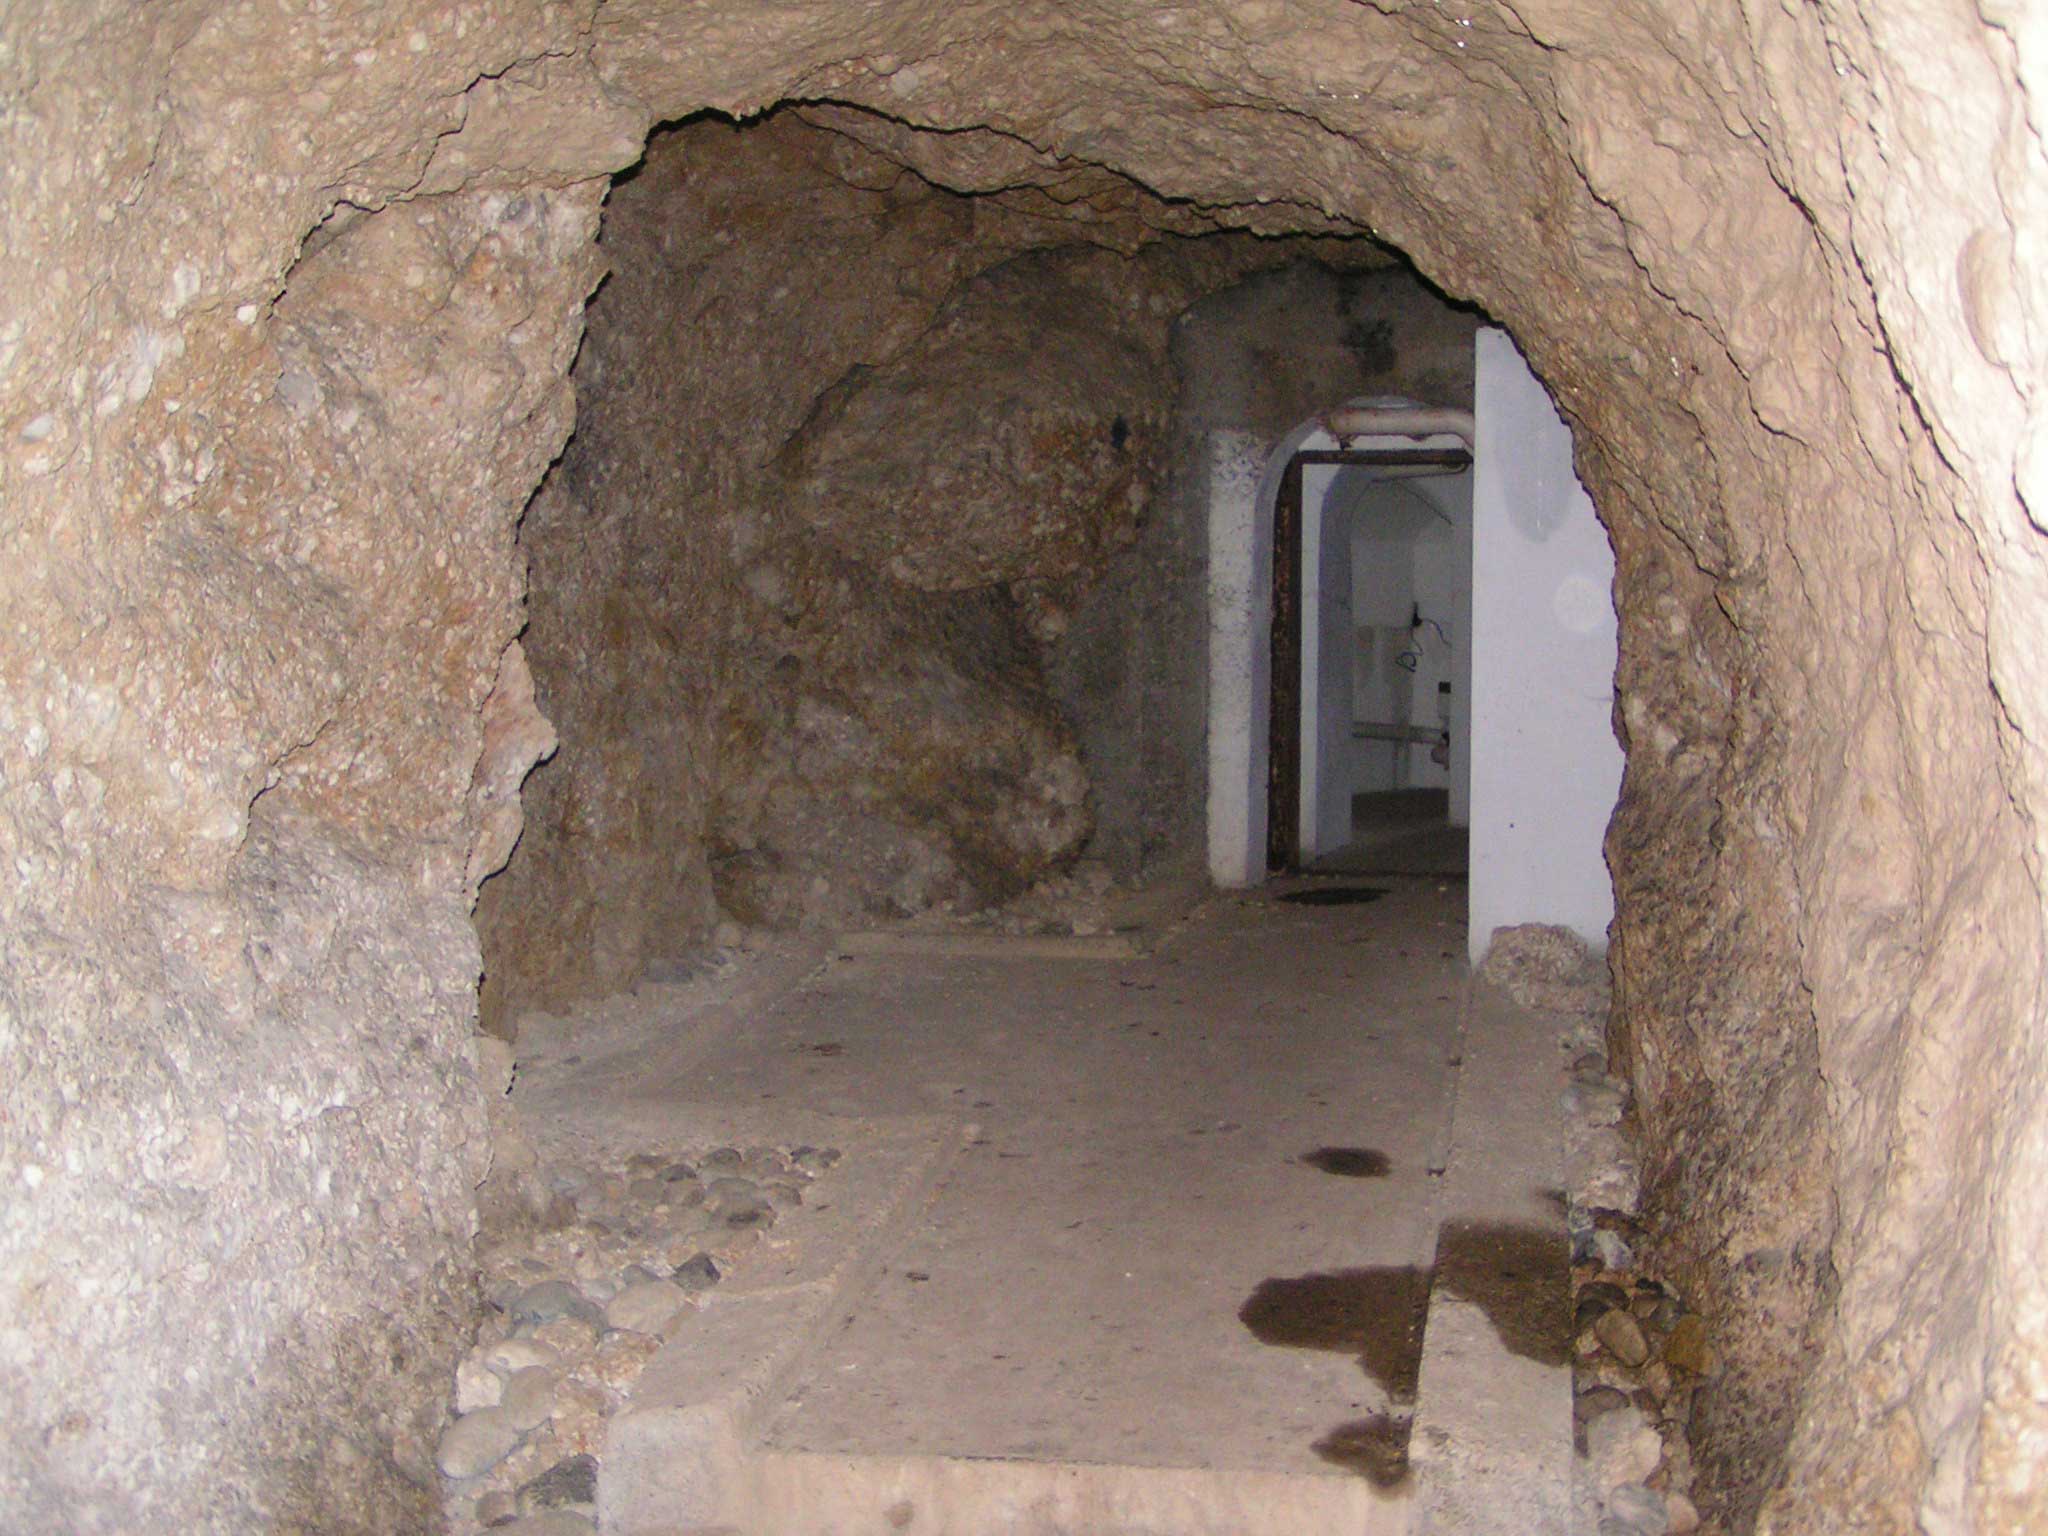 corridoio/camerata in caverna